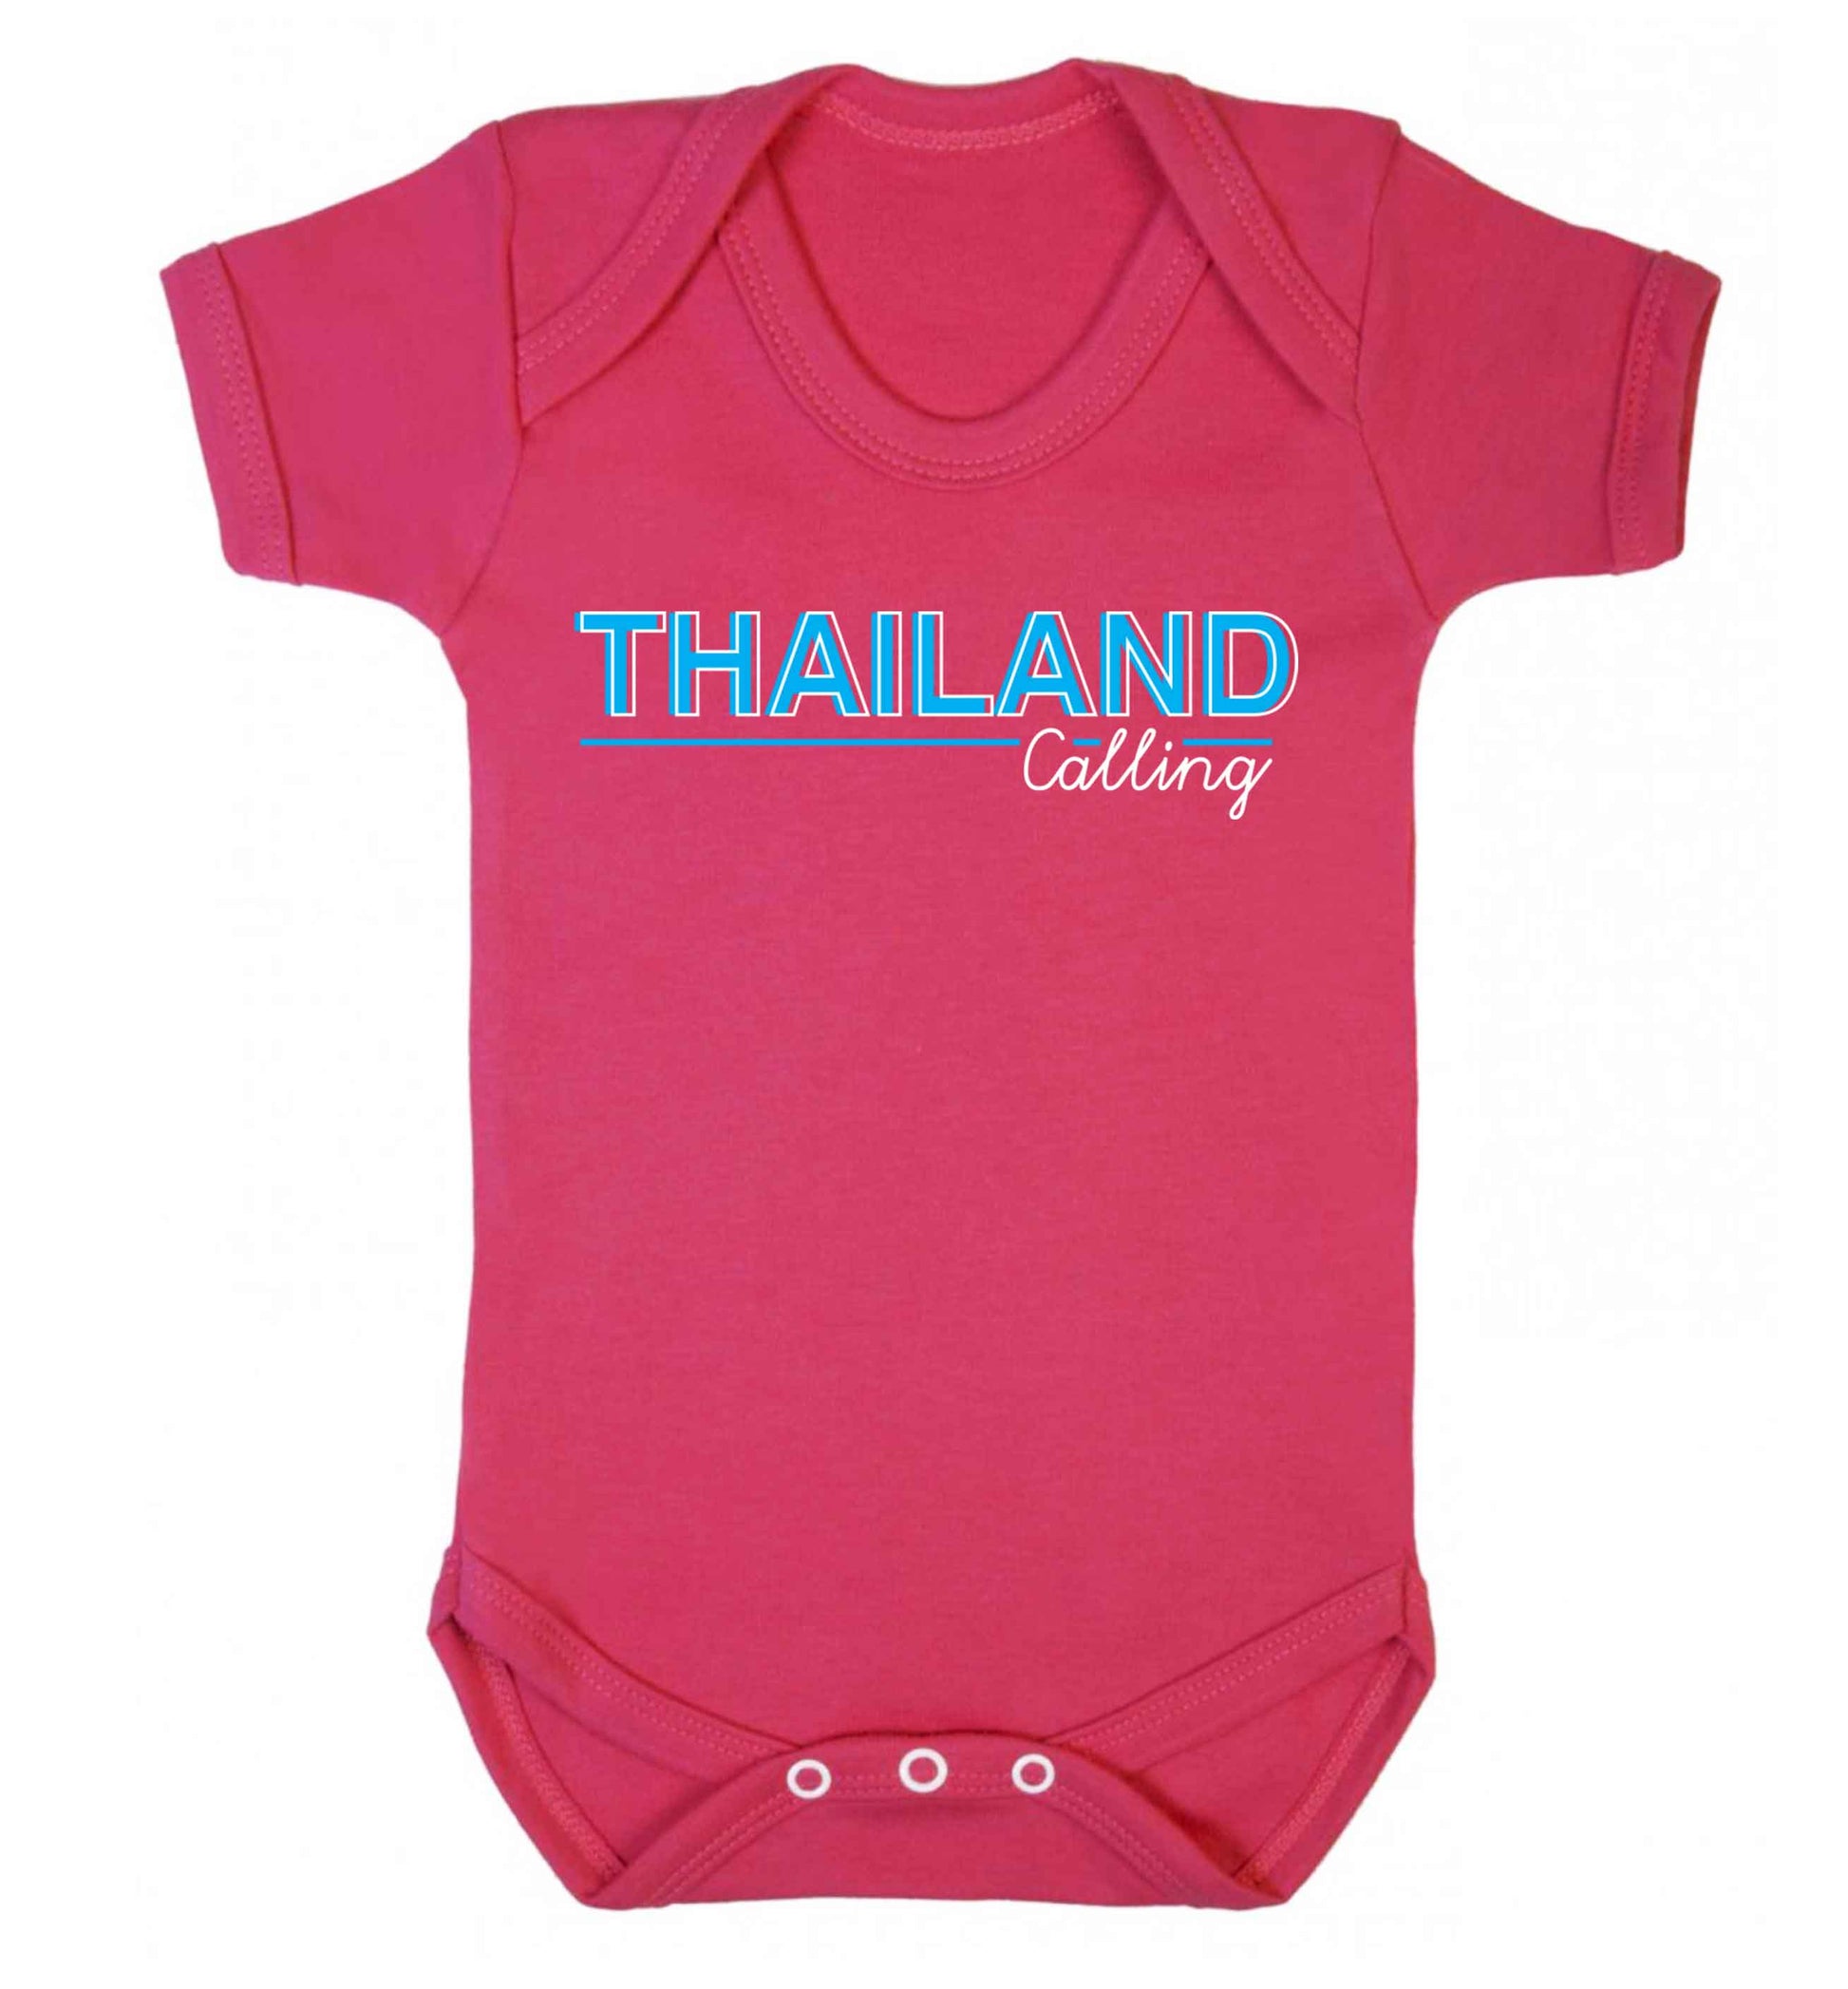 Thailand calling Baby Vest dark pink 18-24 months